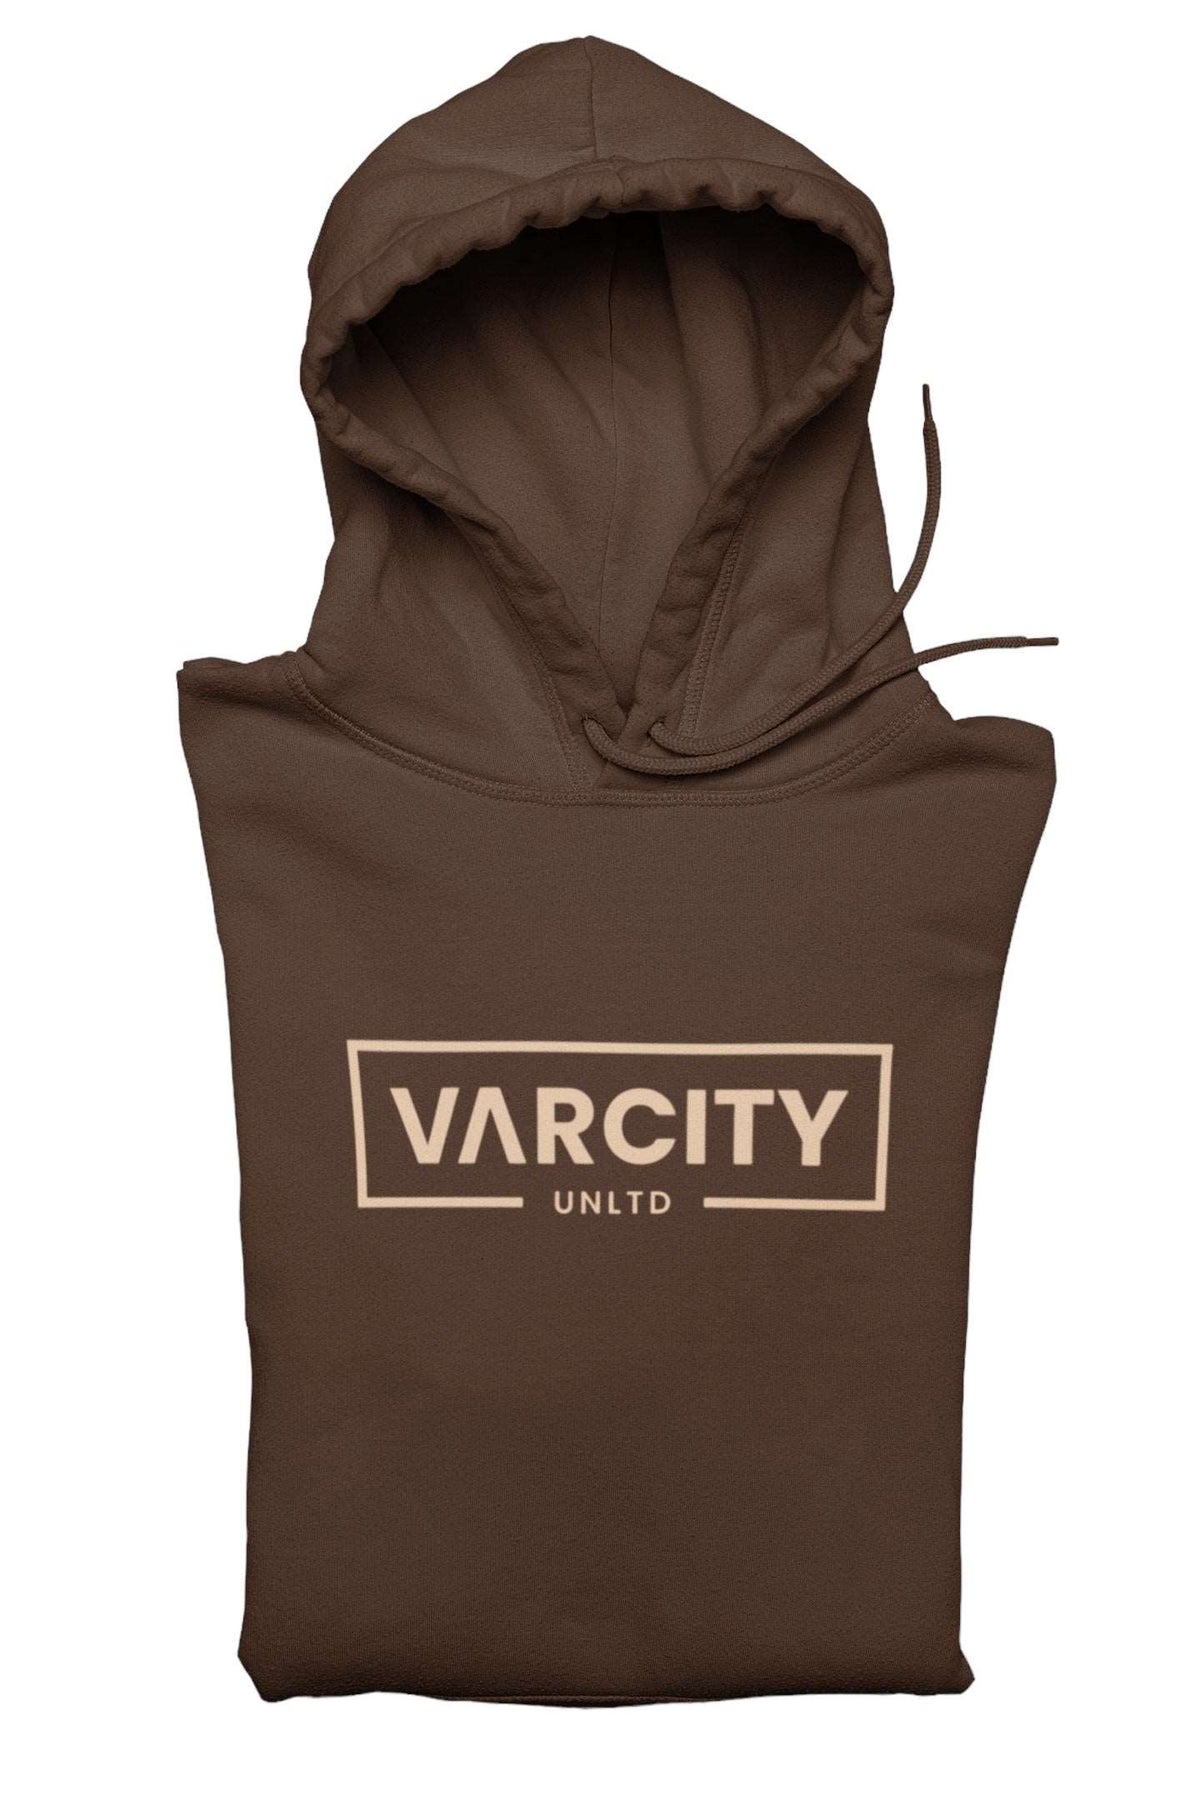 Varcity Unltd ® Legacy Hoodie Chocolate